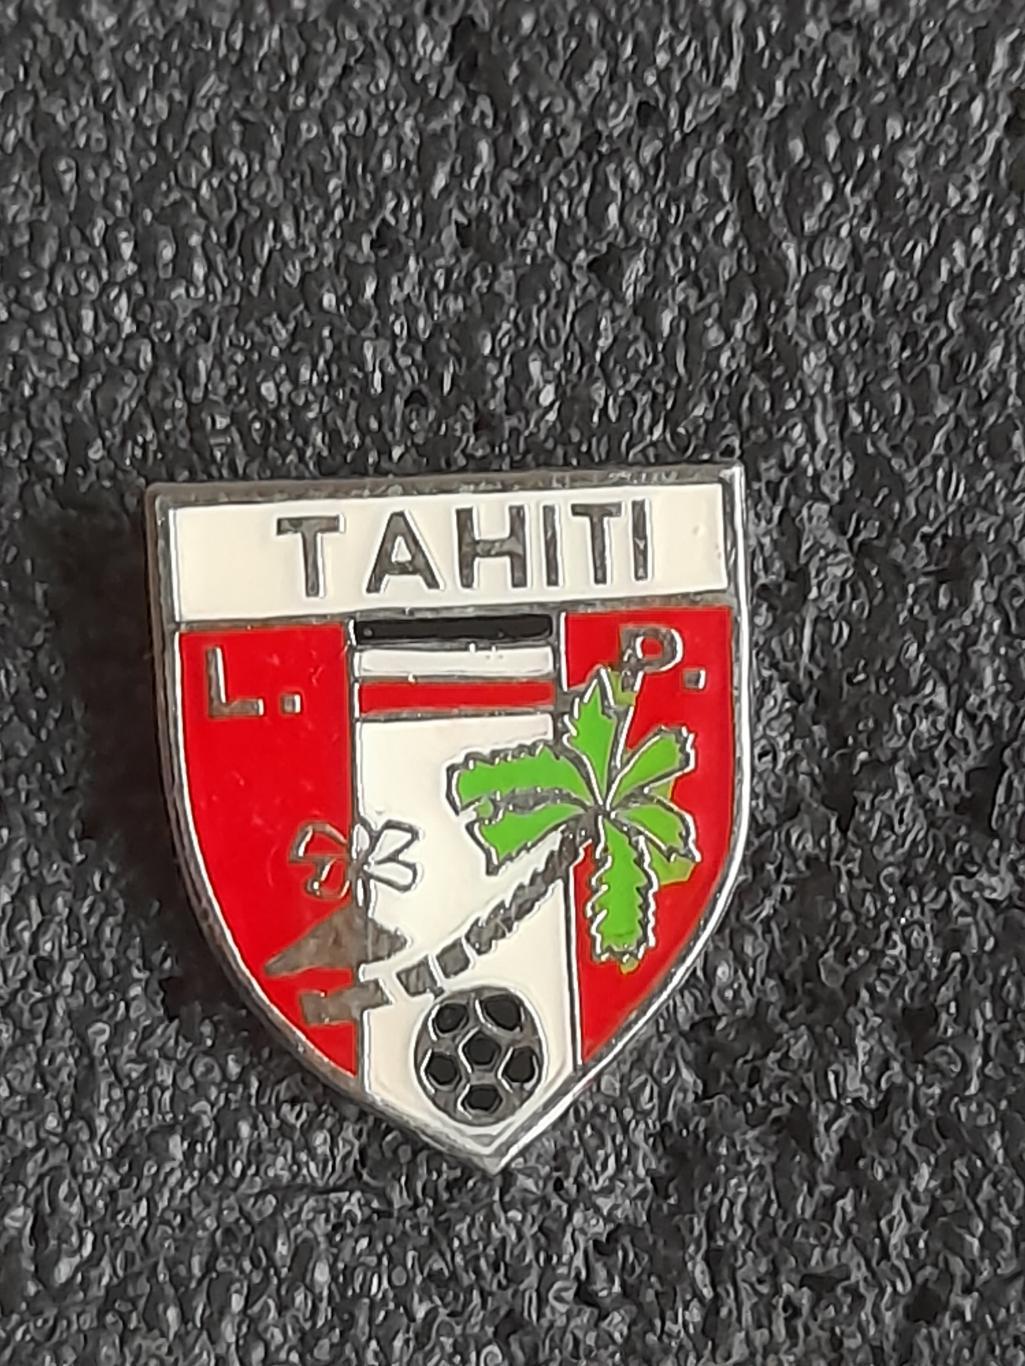 Таїті Федерація футболу/Tahiti Football Federation(2)